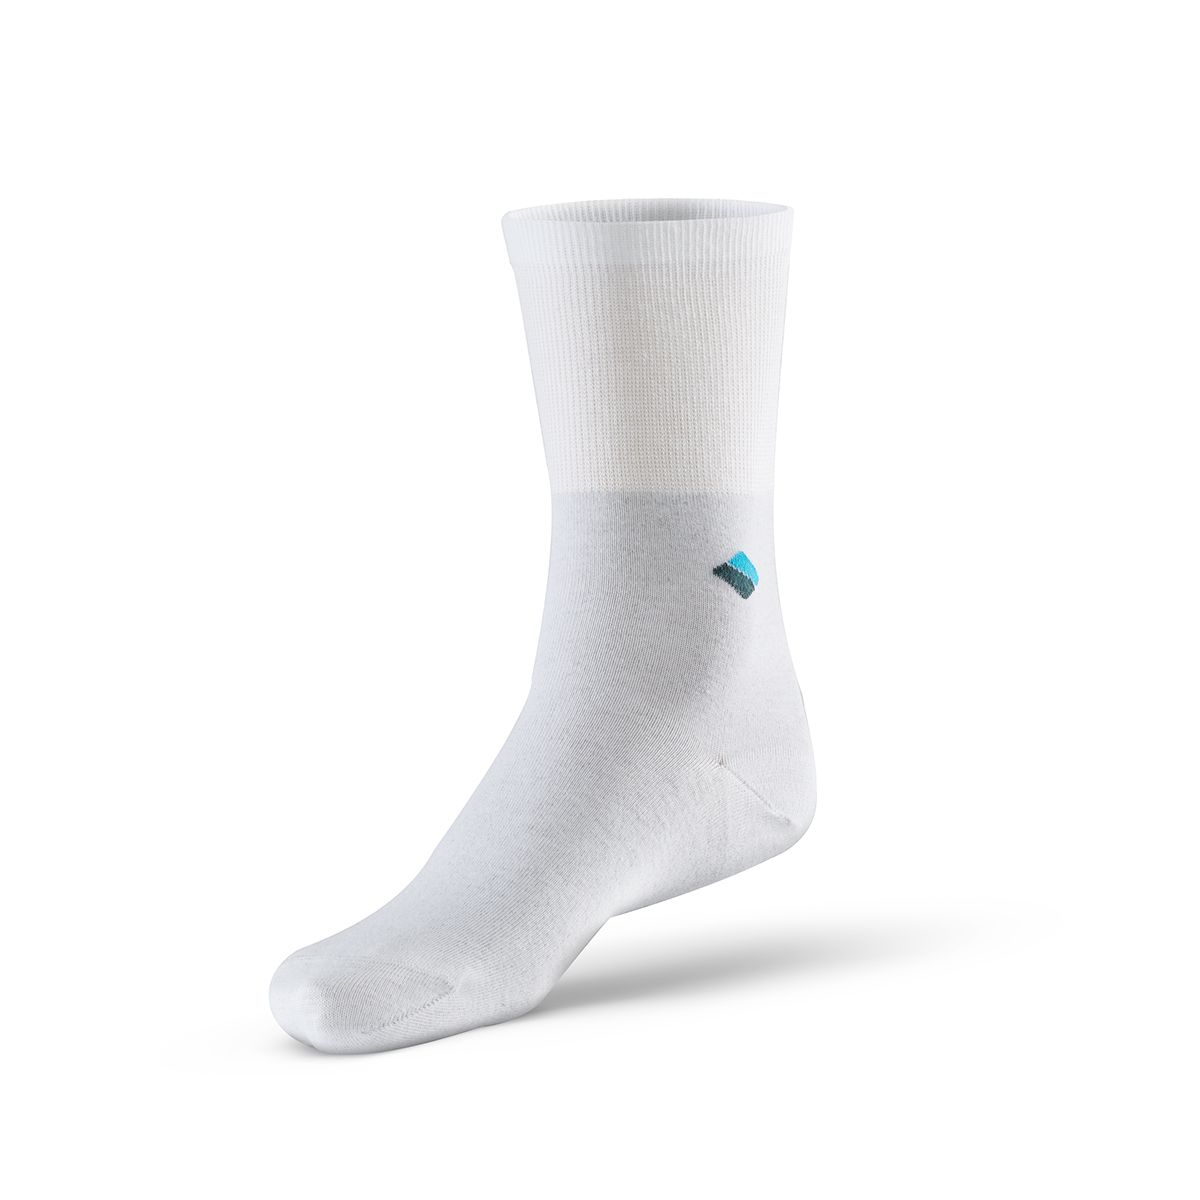 bonnysilver diabetic silver socks in white single sock